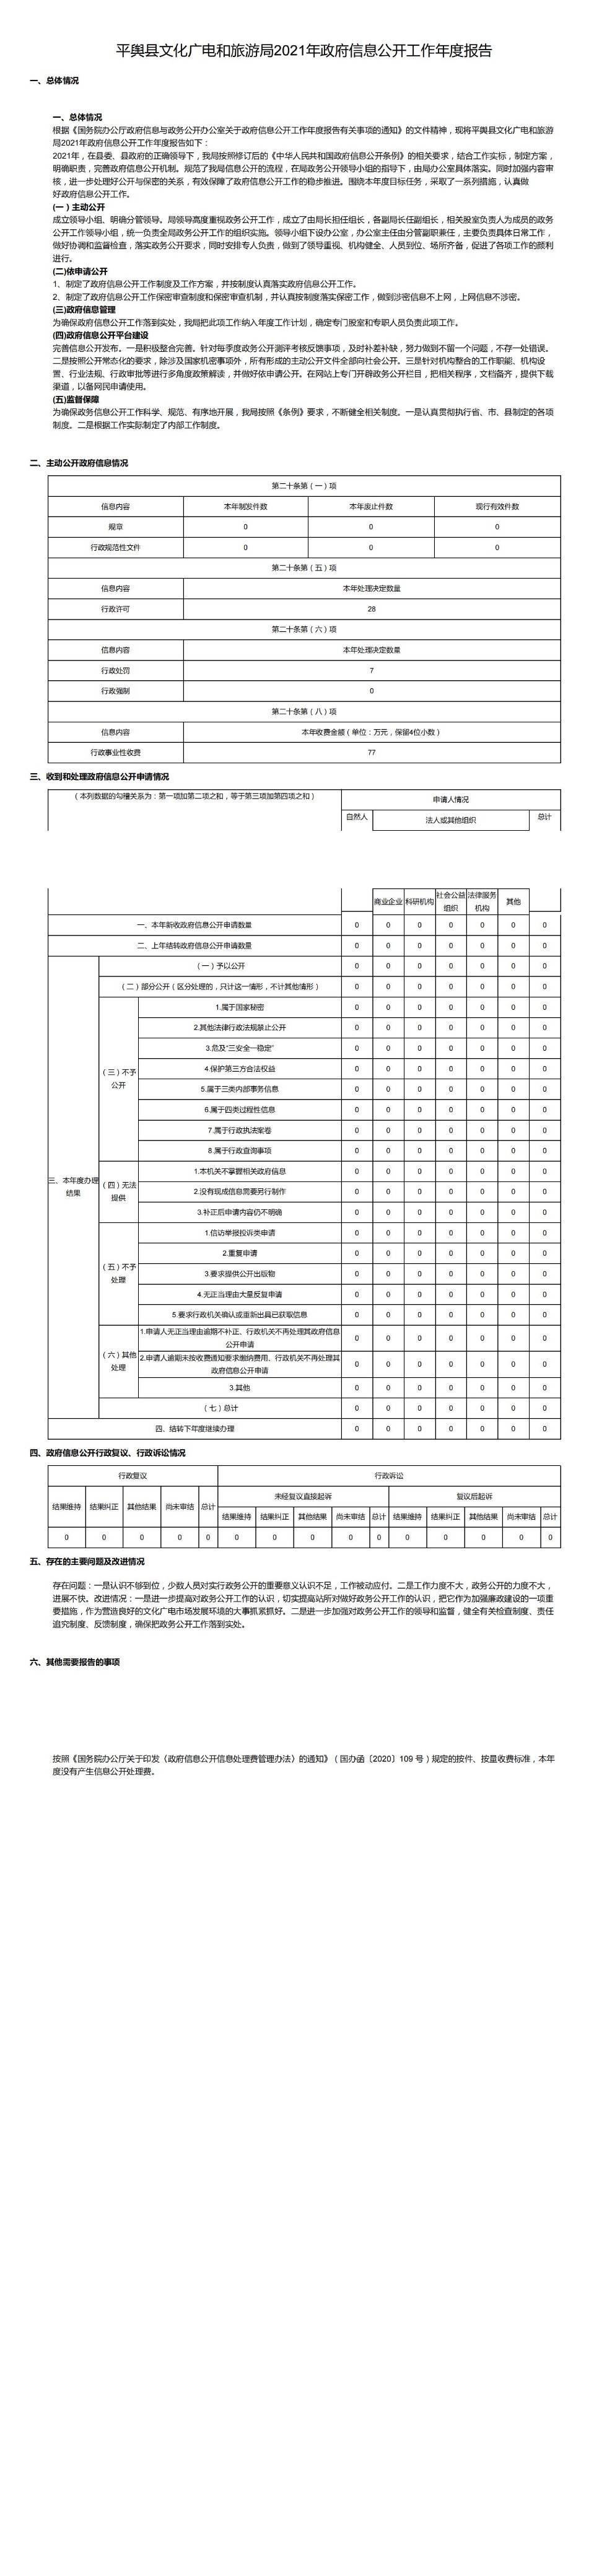 平舆县文化广电和旅游局2021年政府信息公开工作年度报告_00.jpg